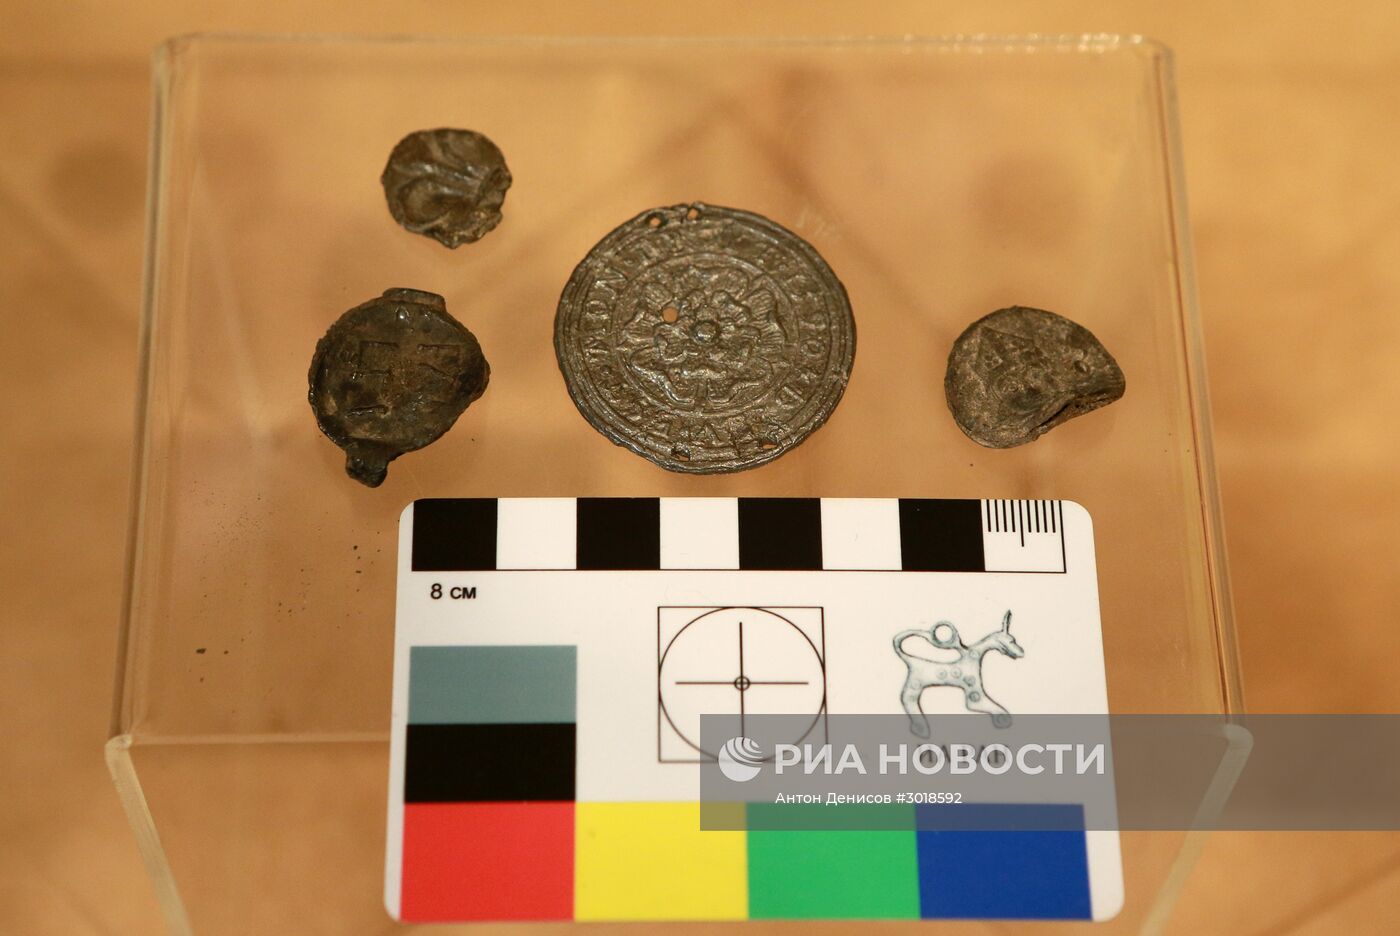 Показ медальона XVI века, найденного во время археологических работ в парке "Зарядье"